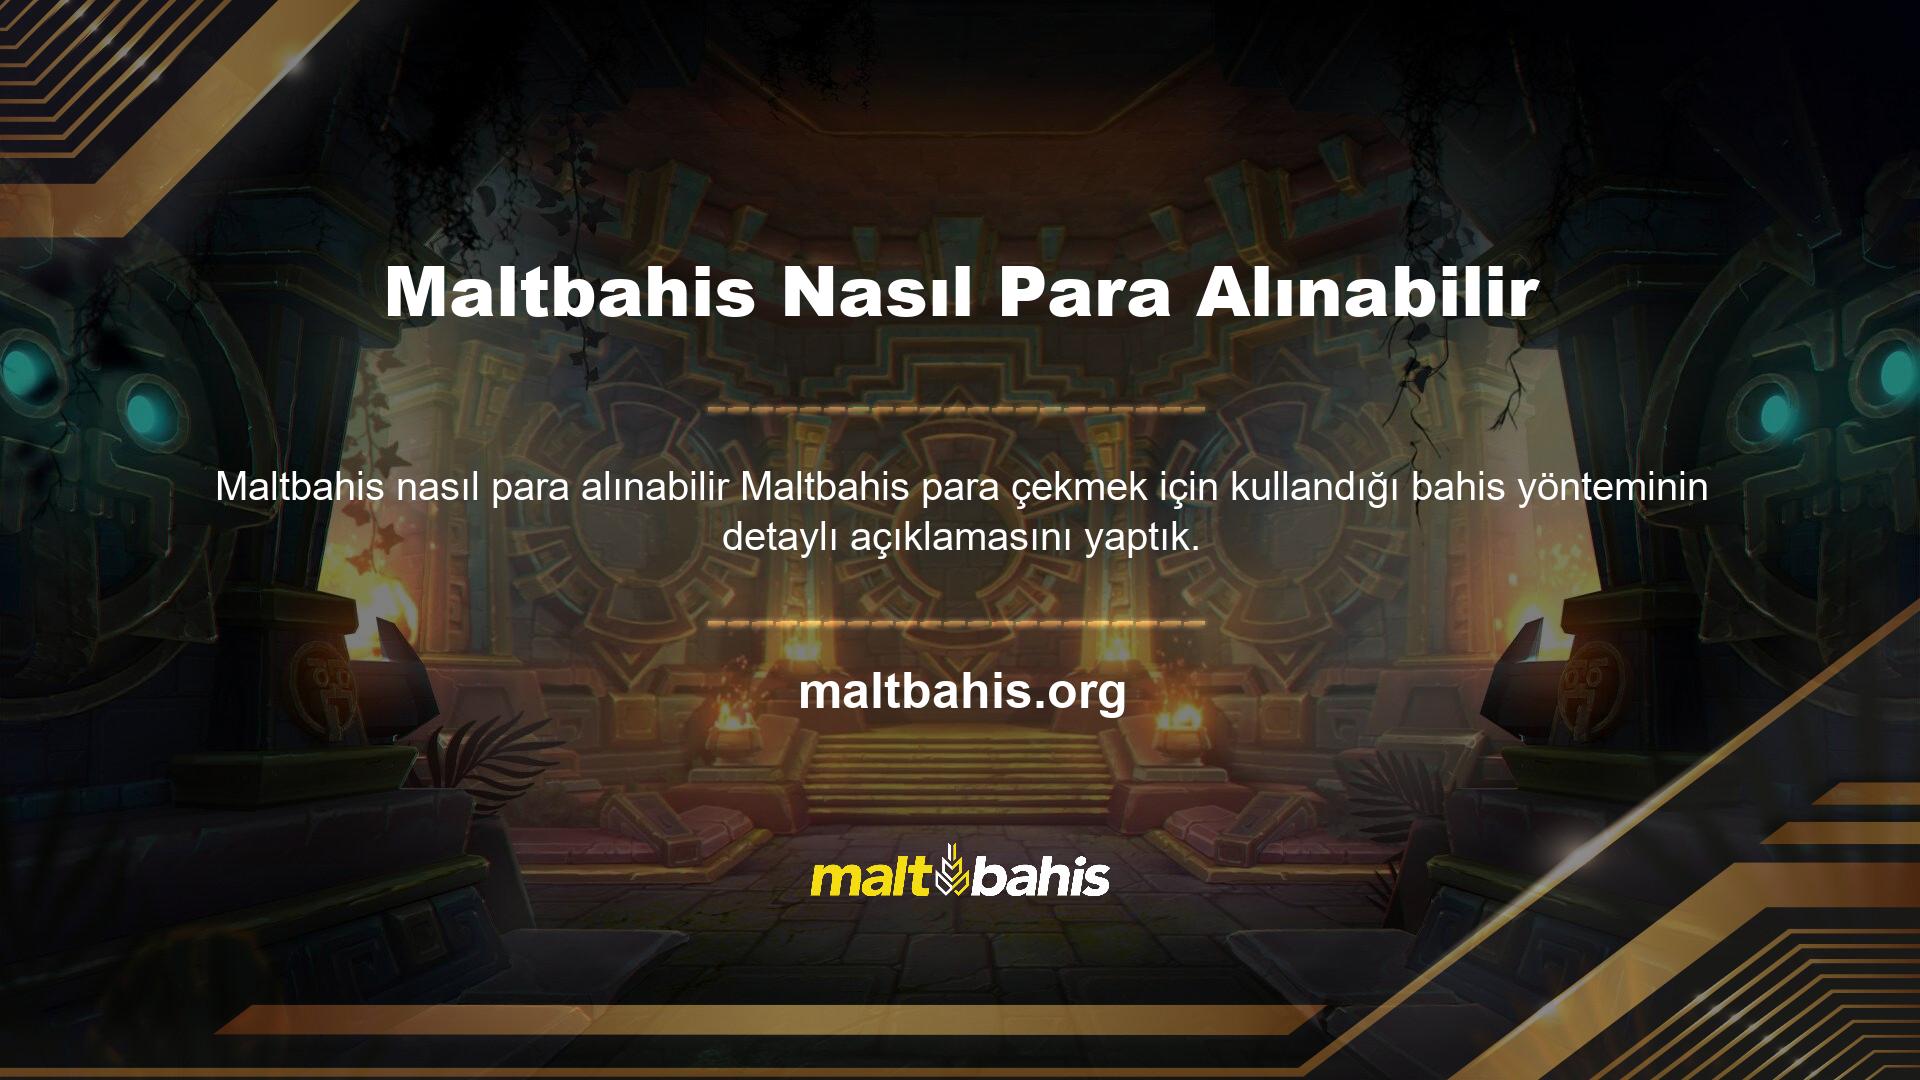 Maltbahis Bahis Sitesinin, oyuncuların mali prosedürler için yaptığı kesintiler üzerinde hiçbir yetkisi yoktur